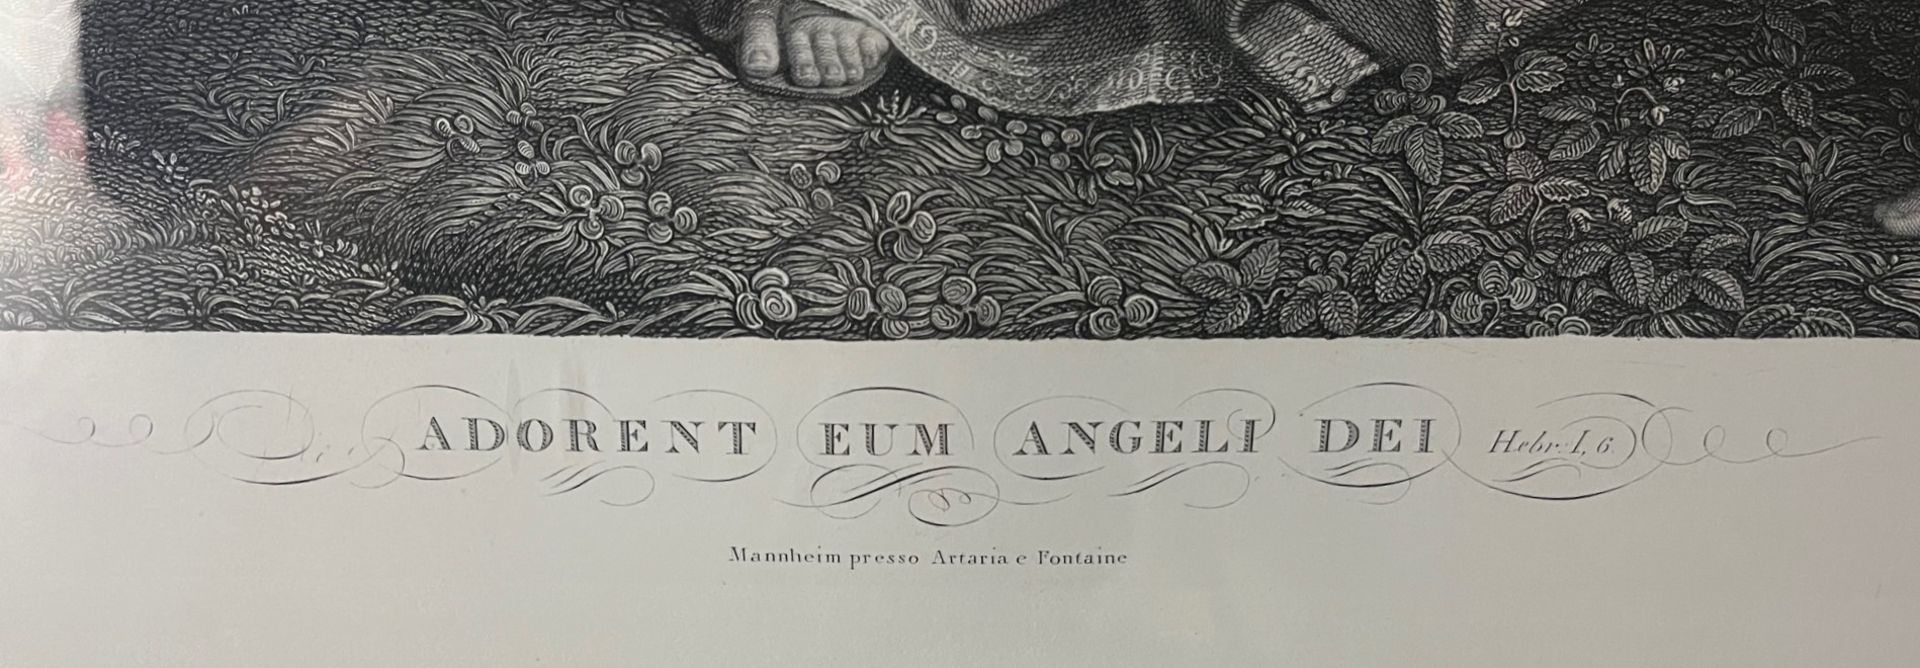 Lithografie "Adorent ein Angeli dei" London 1849  - Bild 2 aus 3